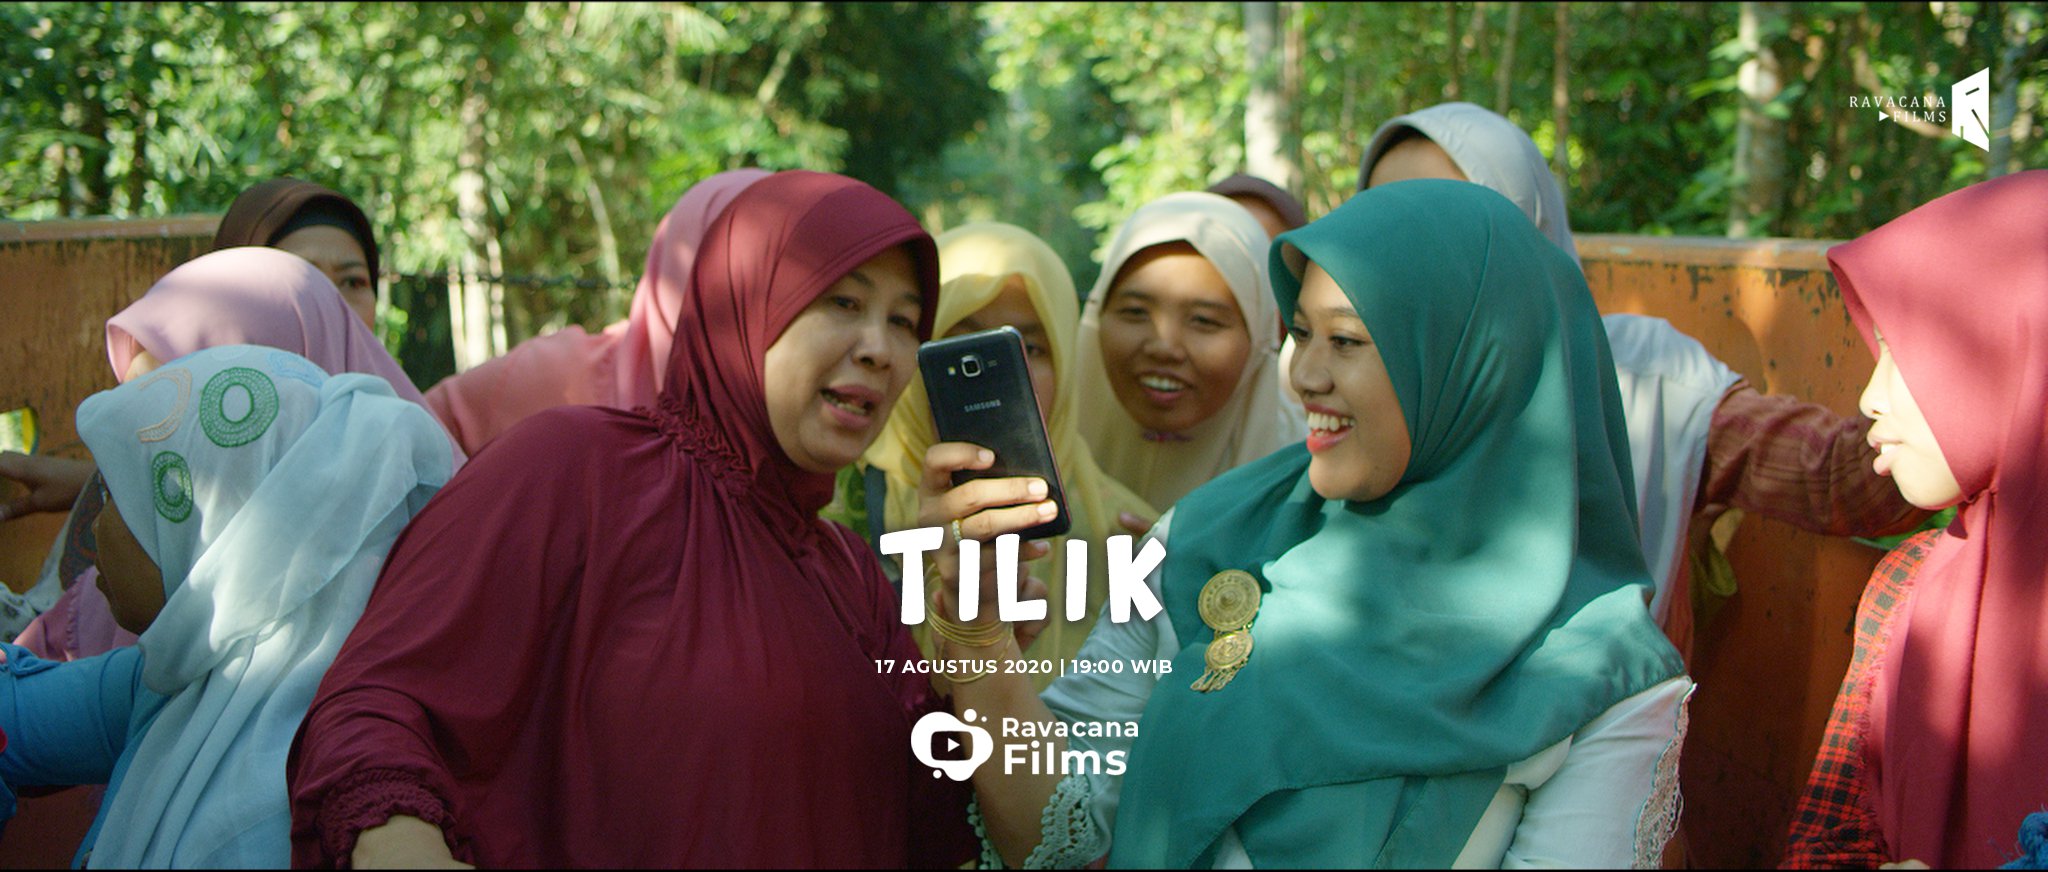 Tayang di YouTube, Film Pendek 'Tilik' Berhasil Curi Perhatian Netizen